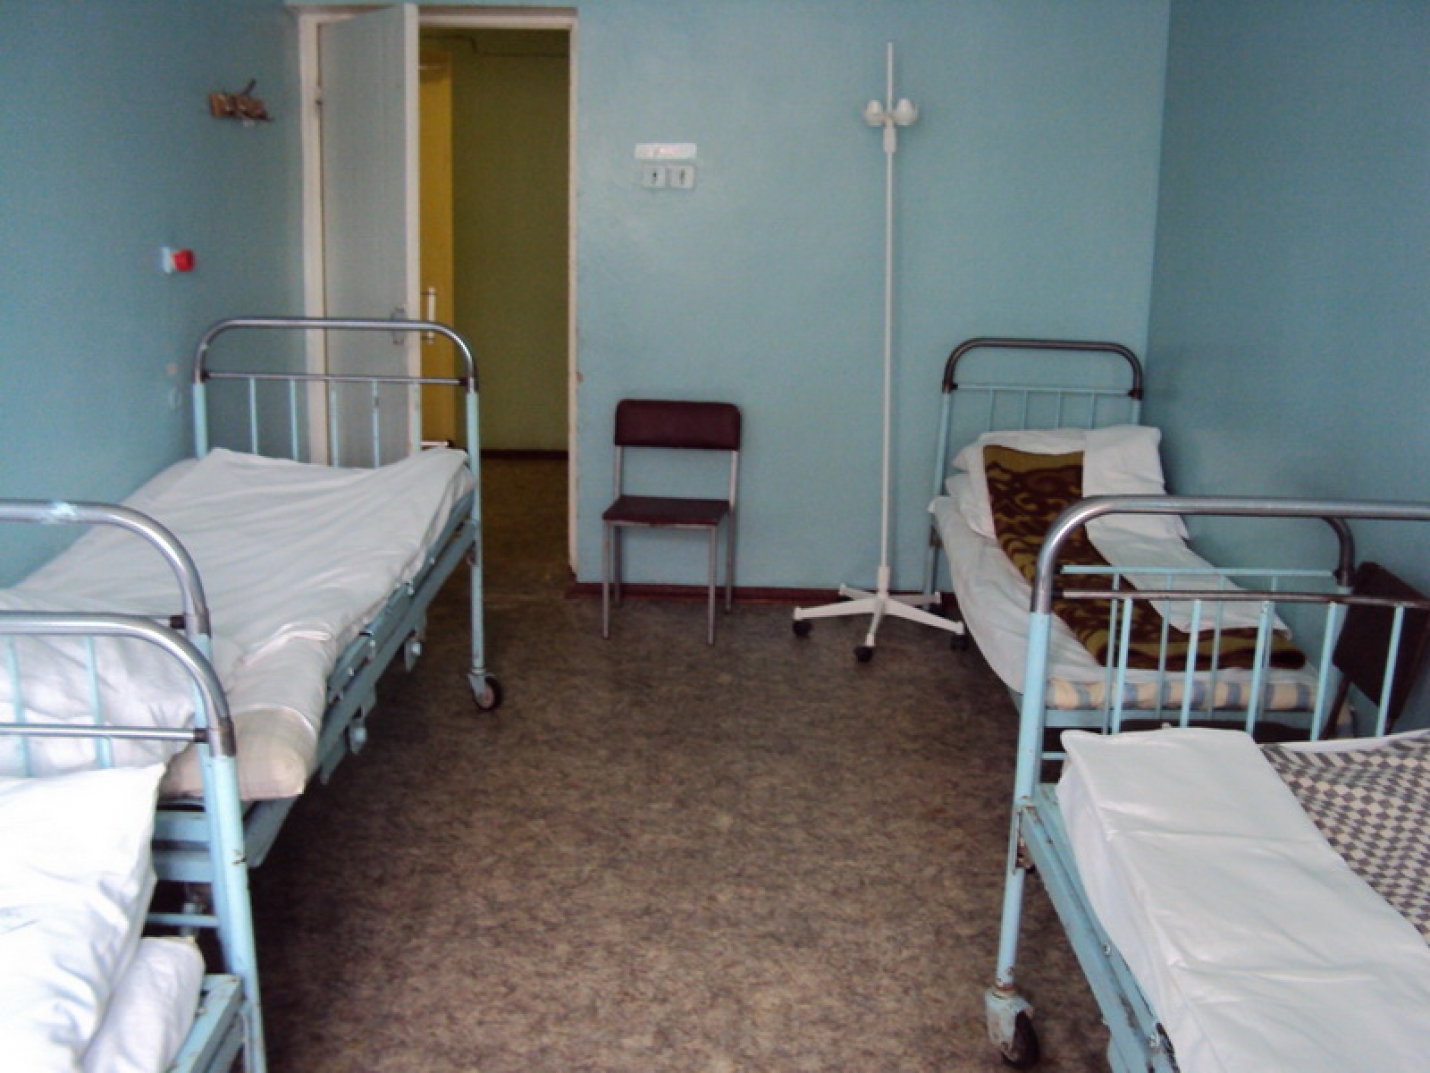 Фото больницы внутри в палате